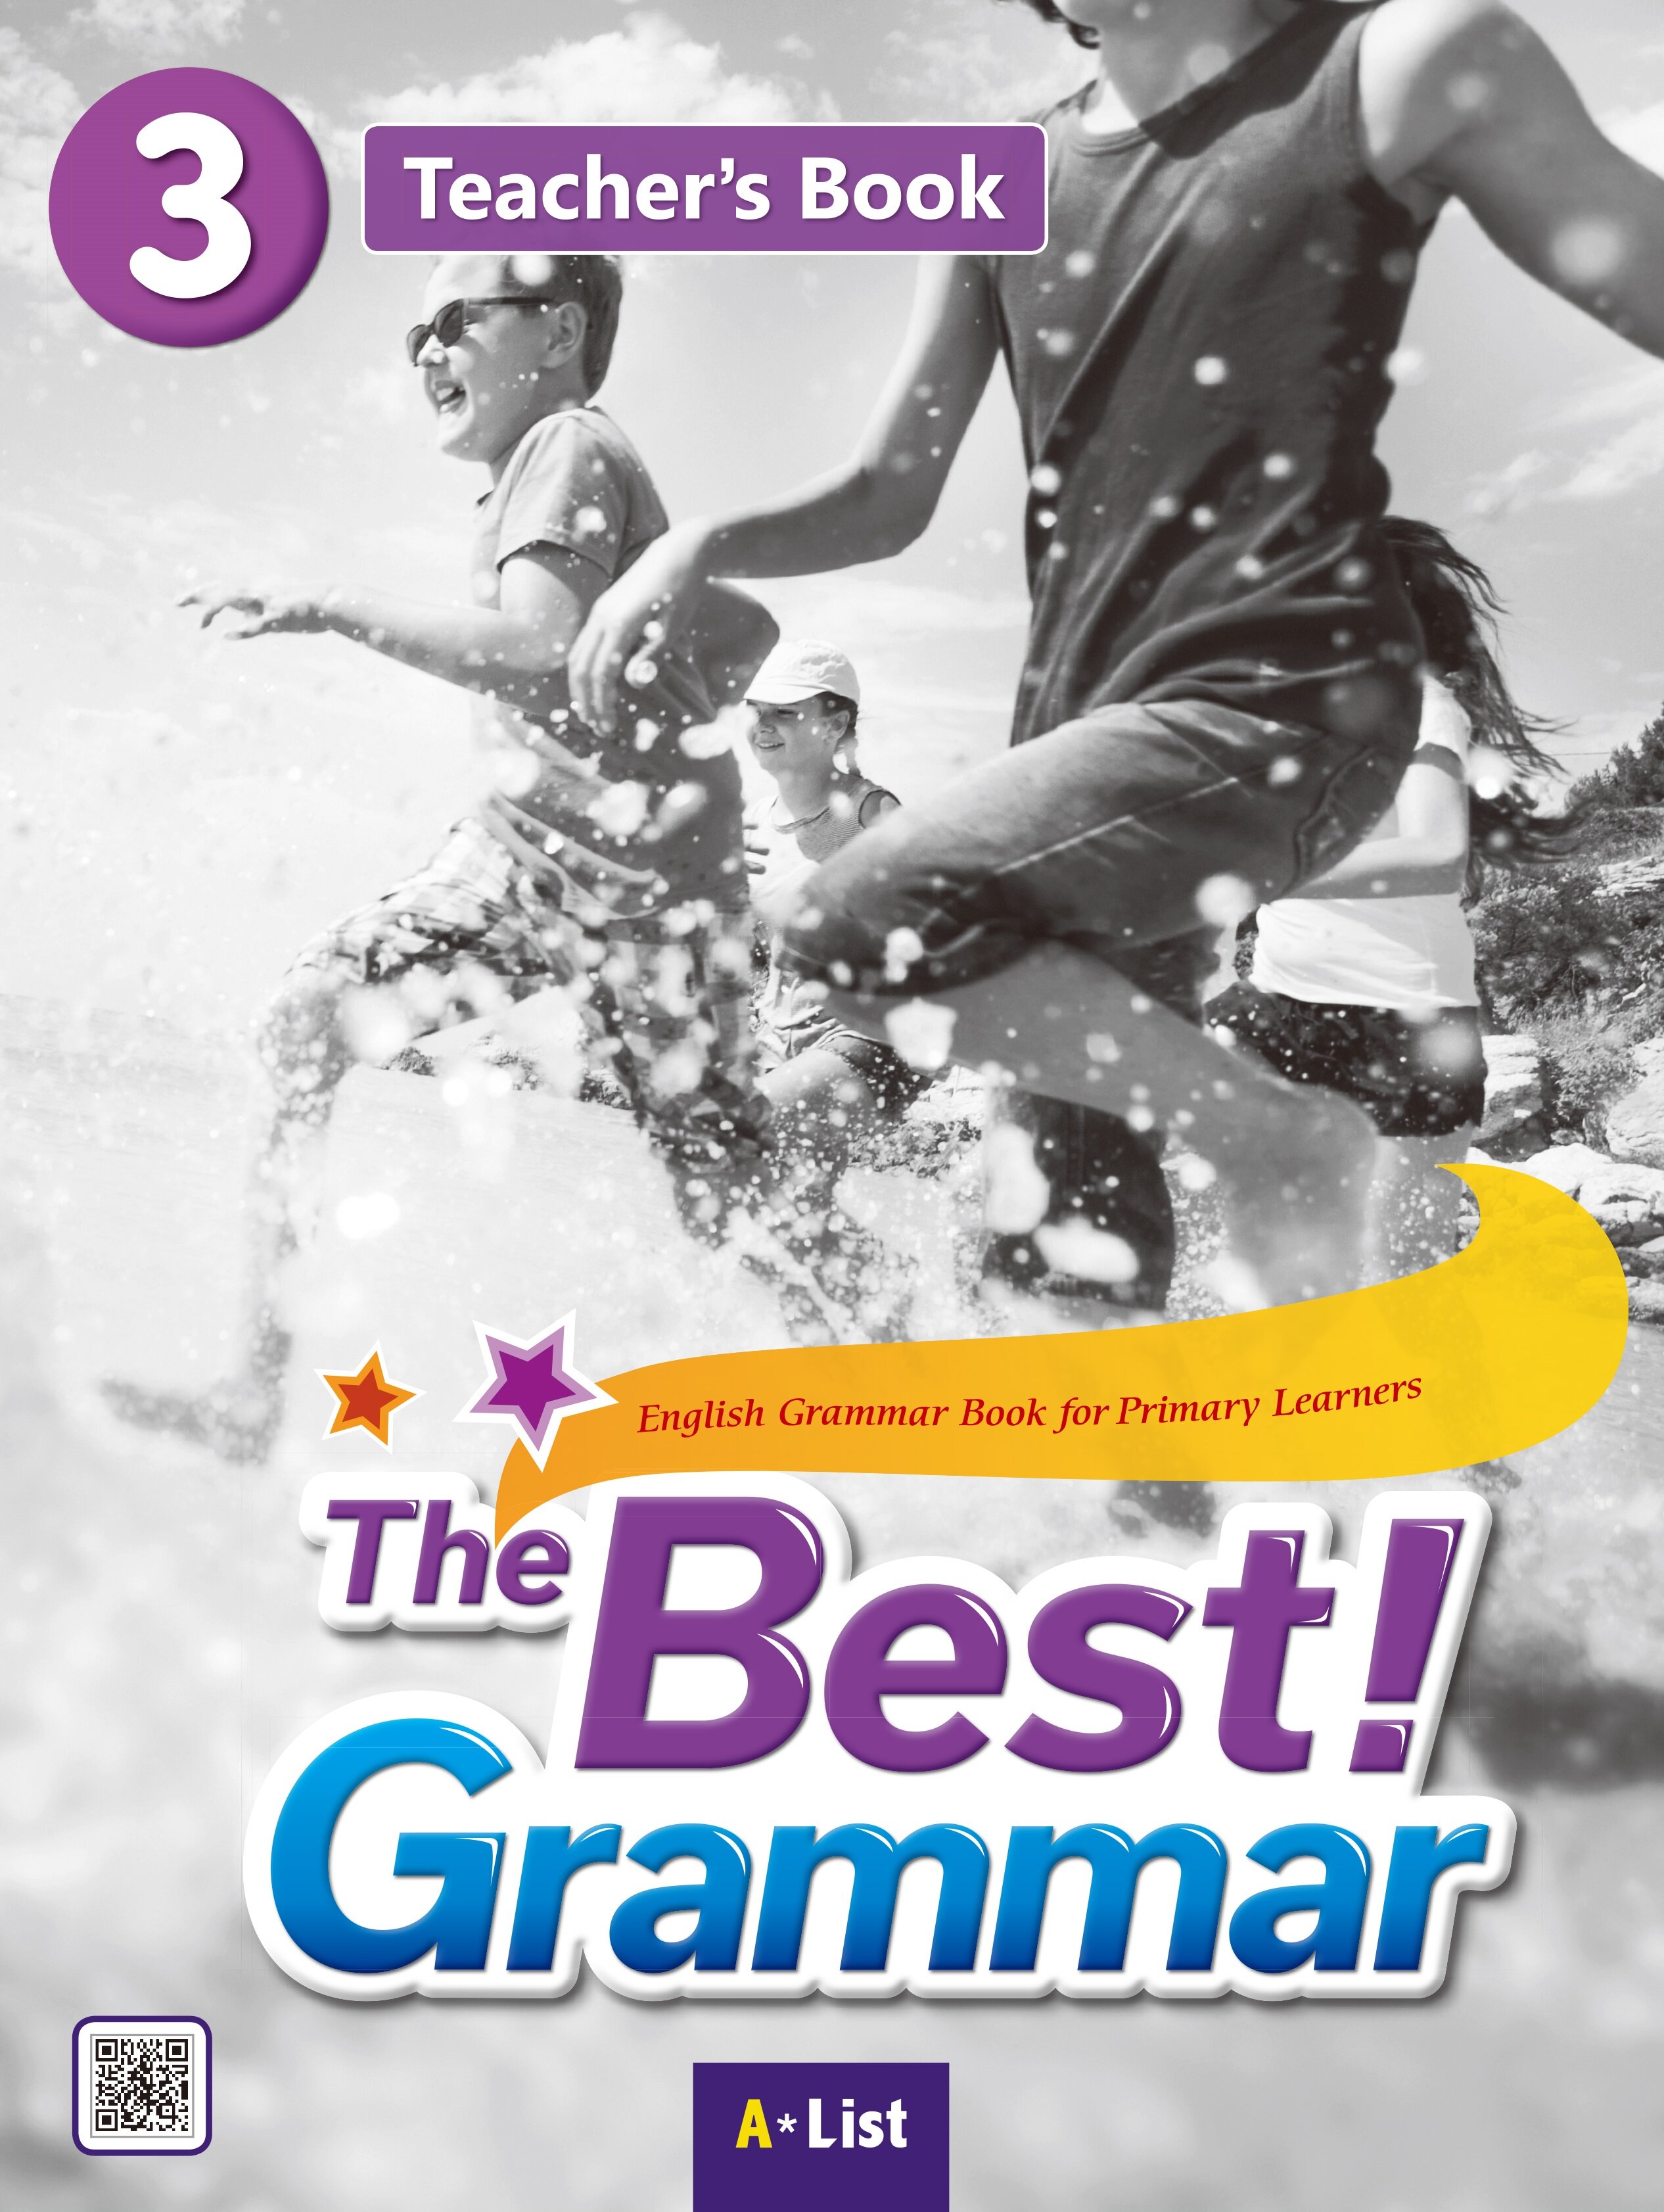 The Best Grammar 3 : Teachers Book (Teachers Resource CD + Worksheet)